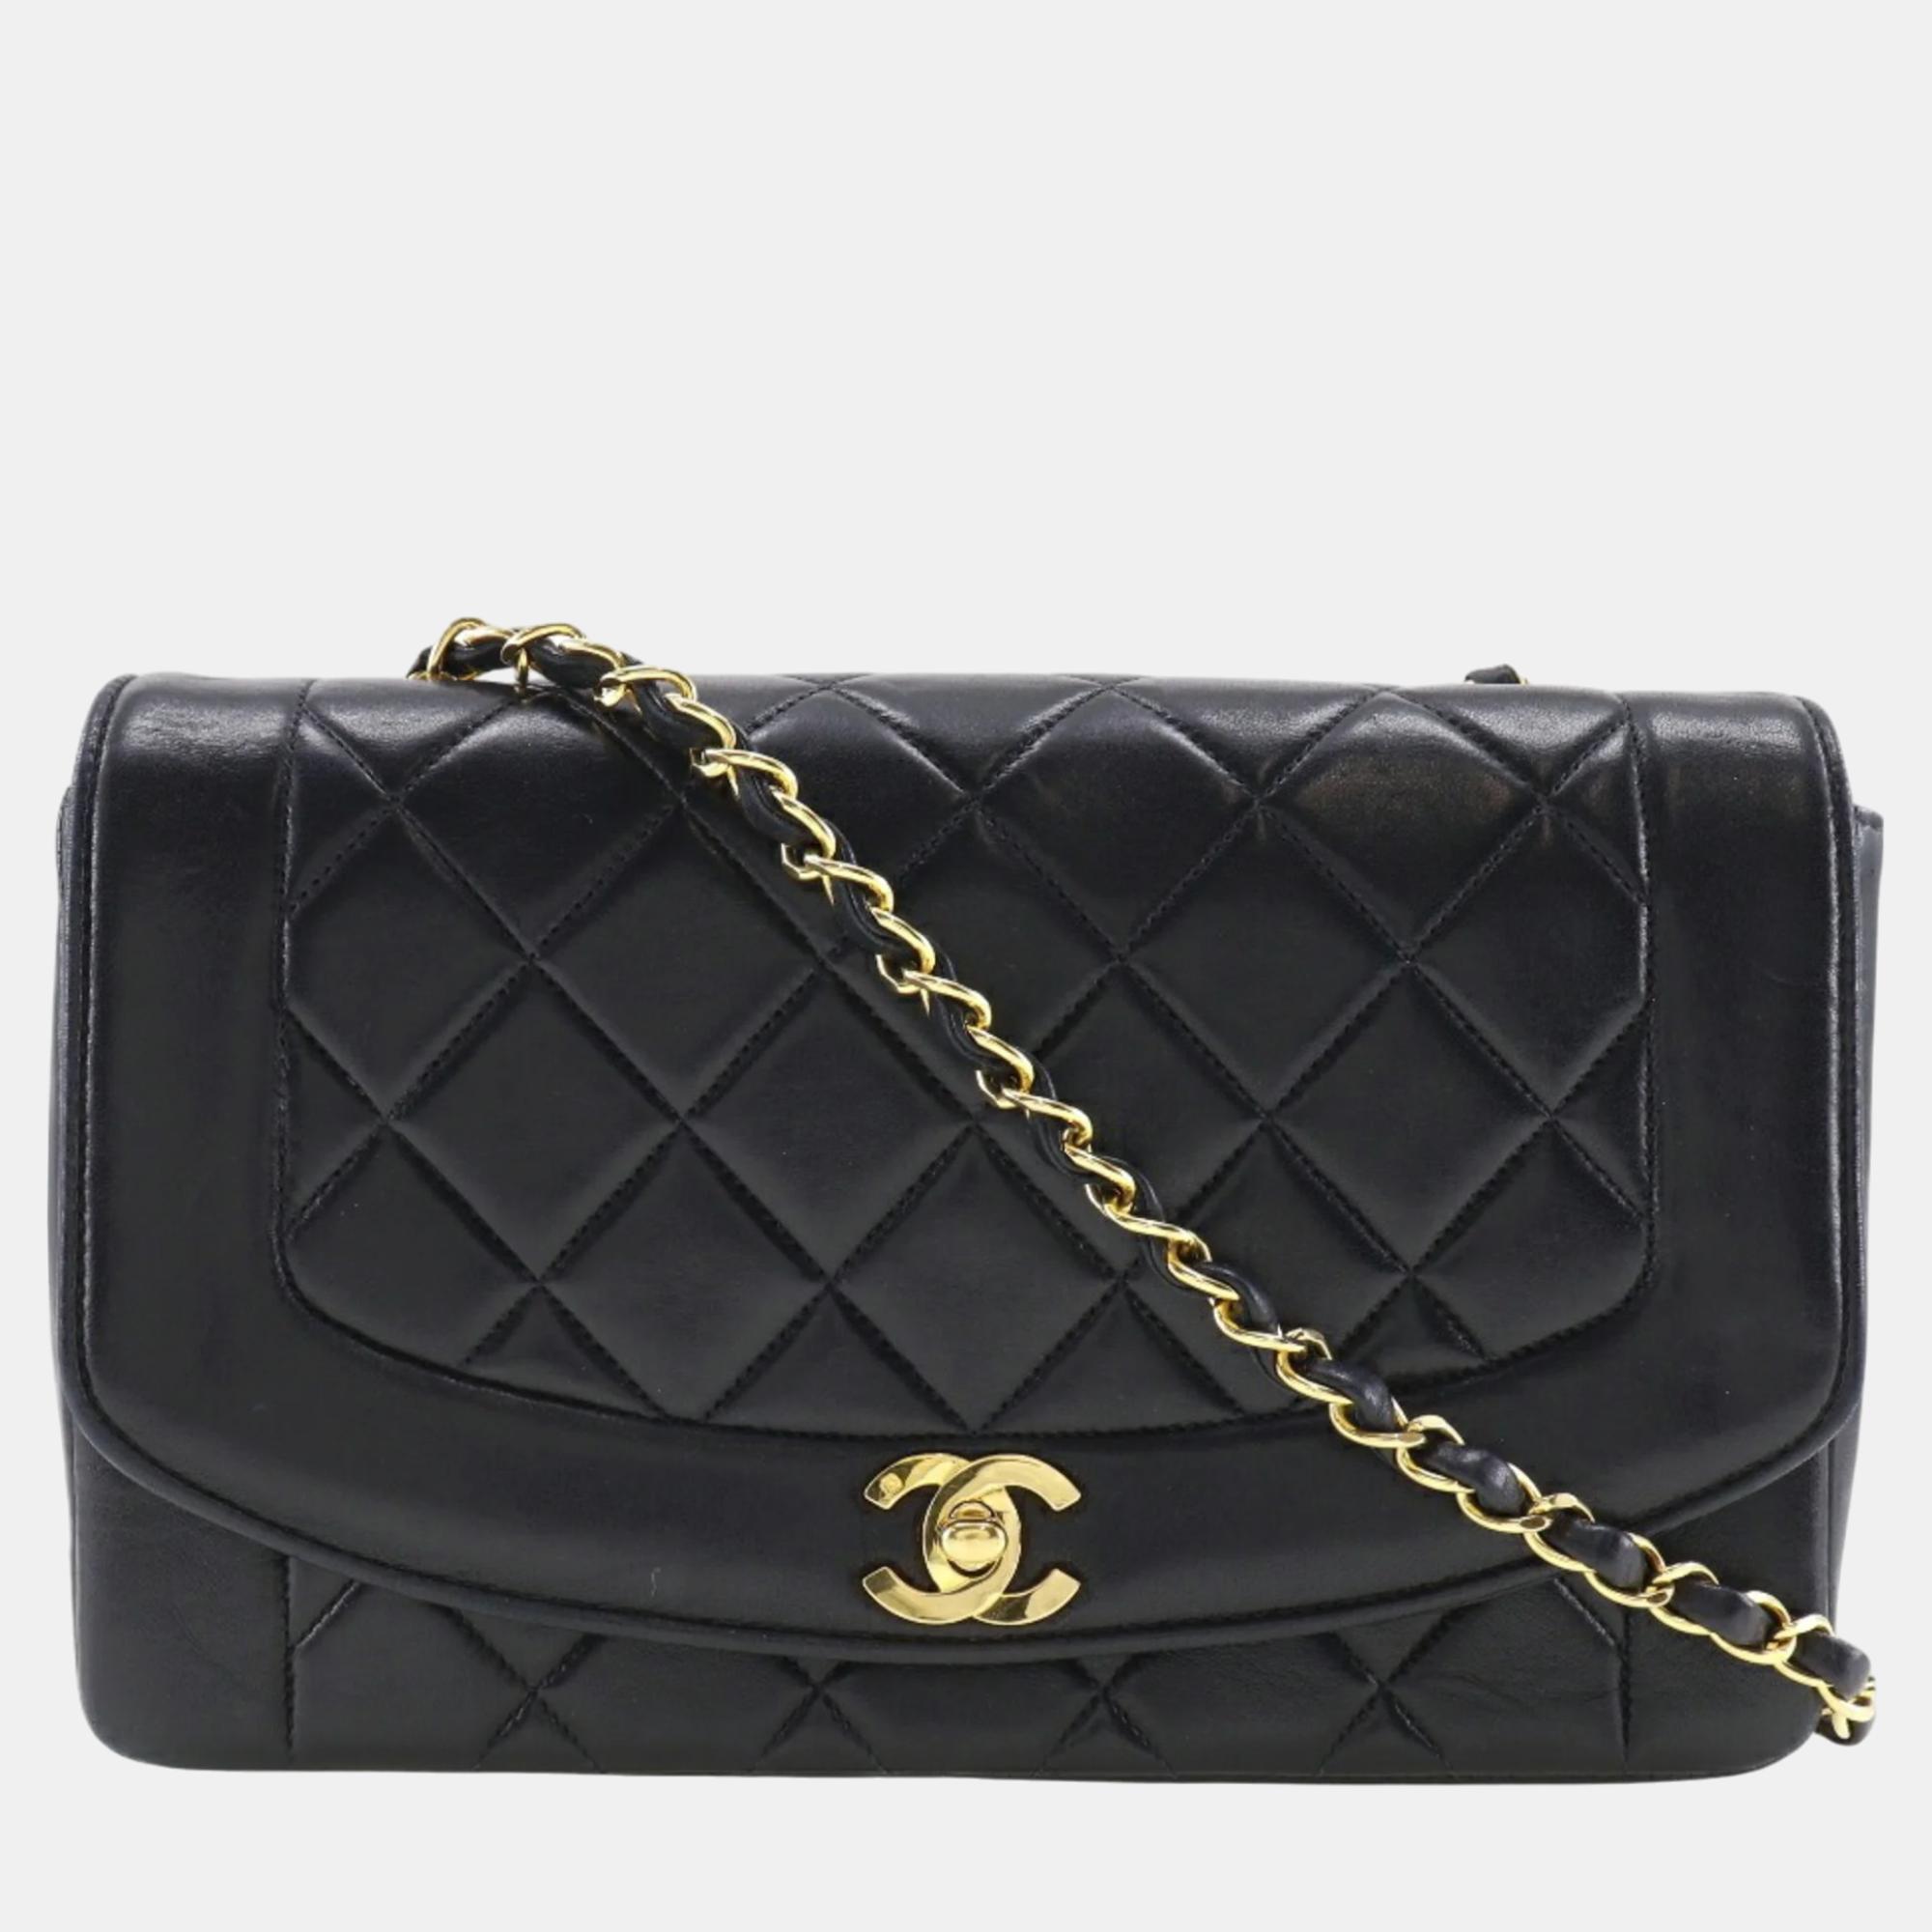 Chanel black leather medium vintage diana shoulder bag